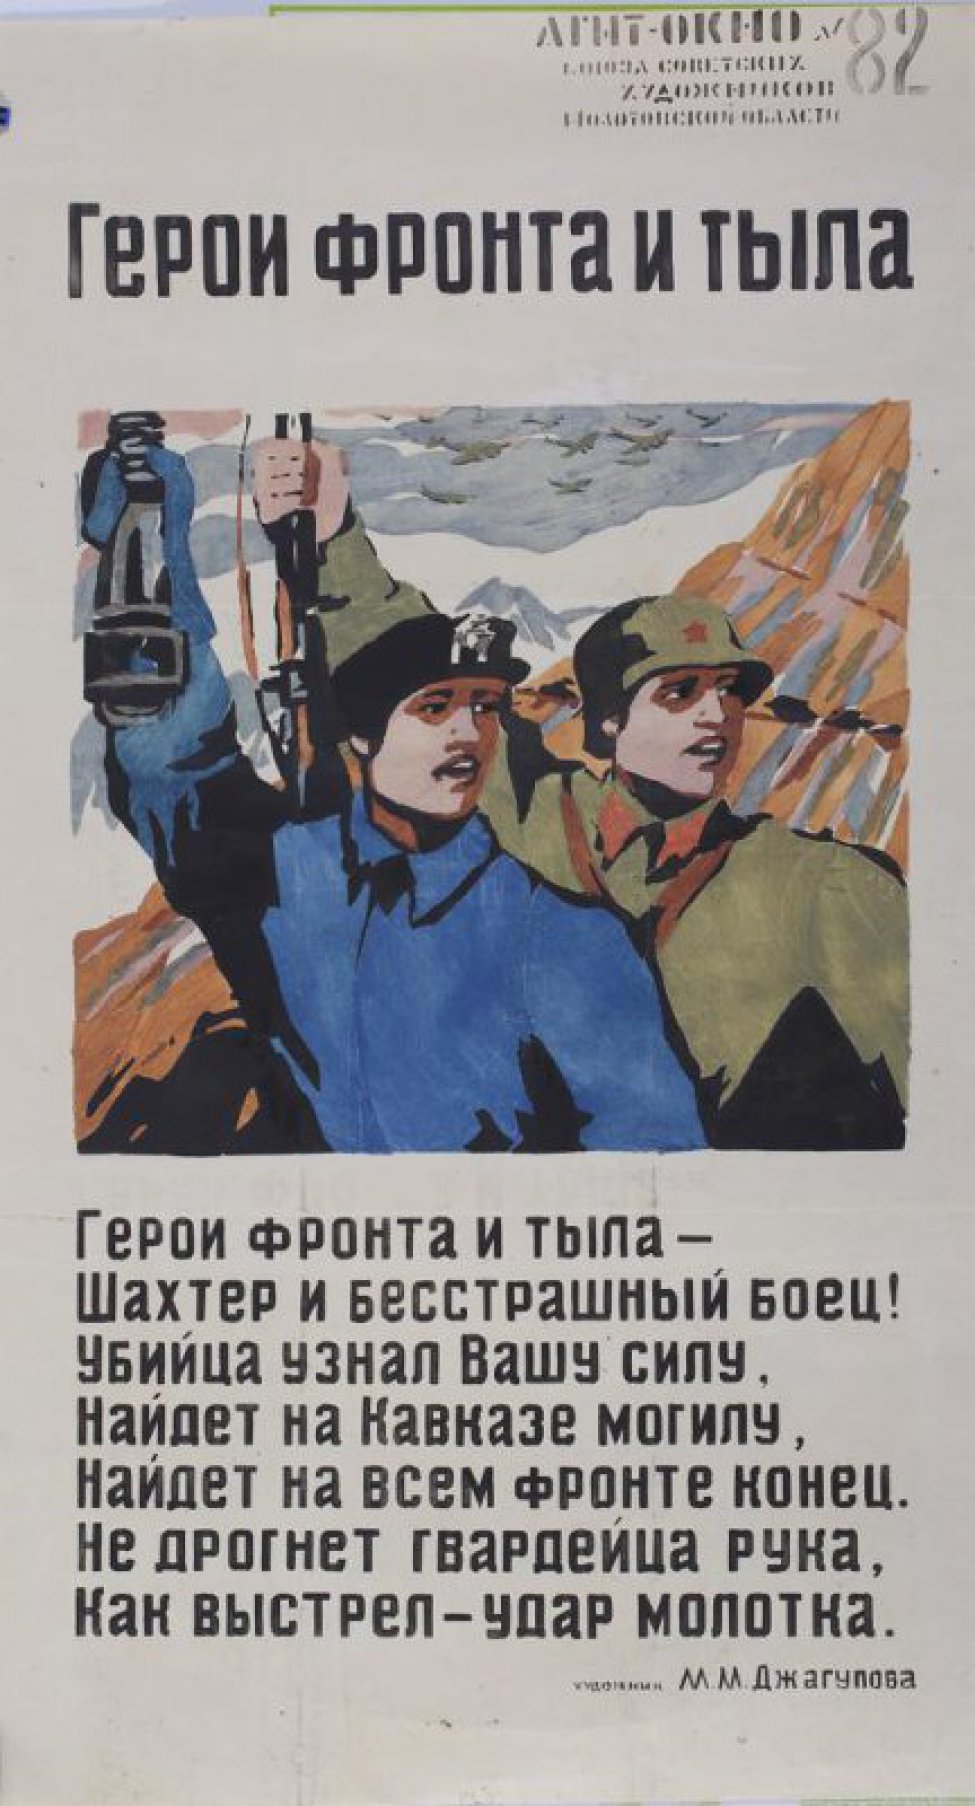 Изображено: шахтер с лампой и боец с винтовкой в руках, текст: "Герои фронта и тыла - шахтер и бесстрашный боец!..."